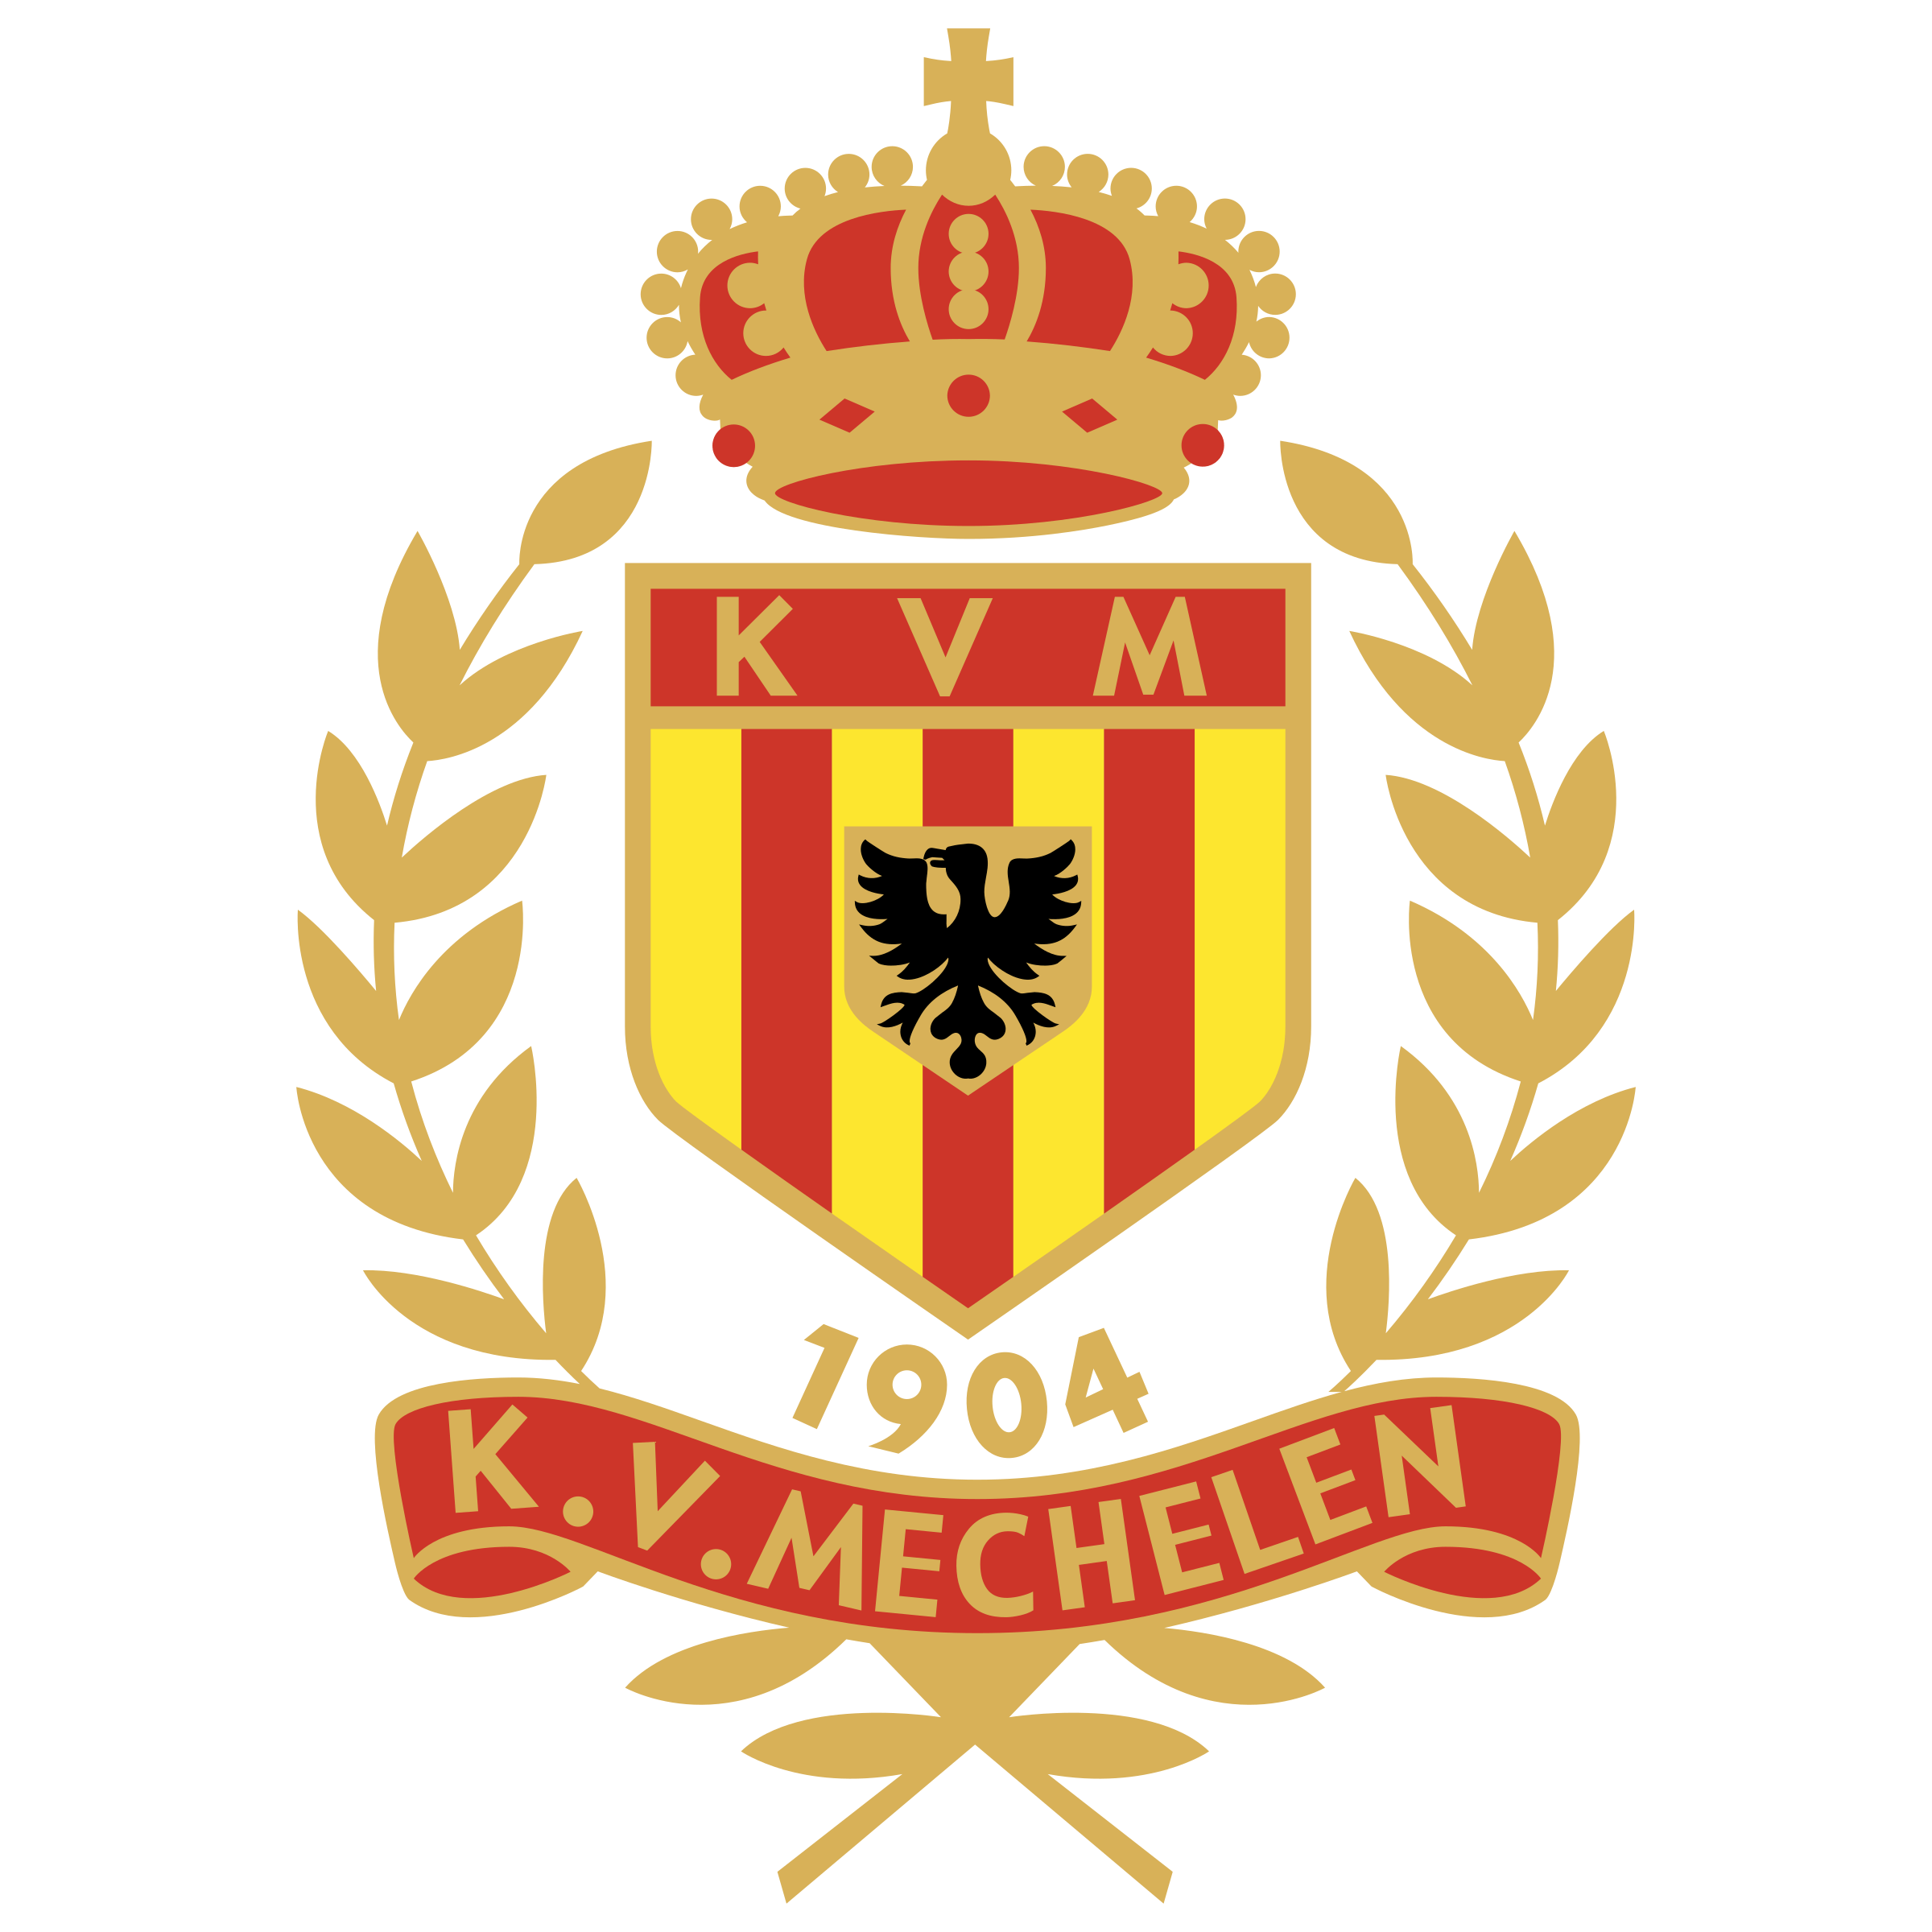 KVM Logo - KV Logo PNG Transparent & SVG Vector - Freebie Supply